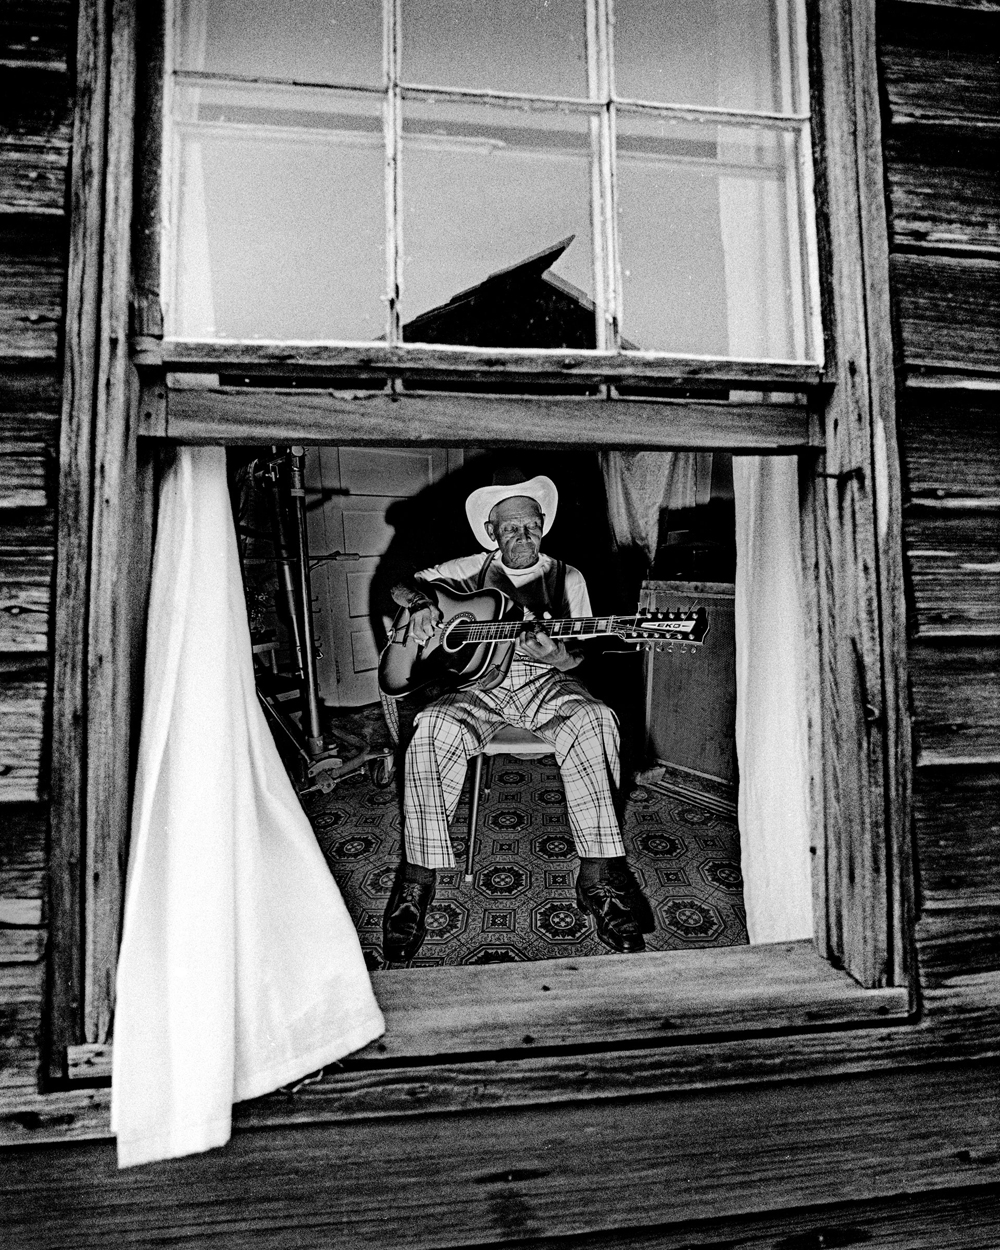 Jack Owens in Window,  by Eyd Kazery